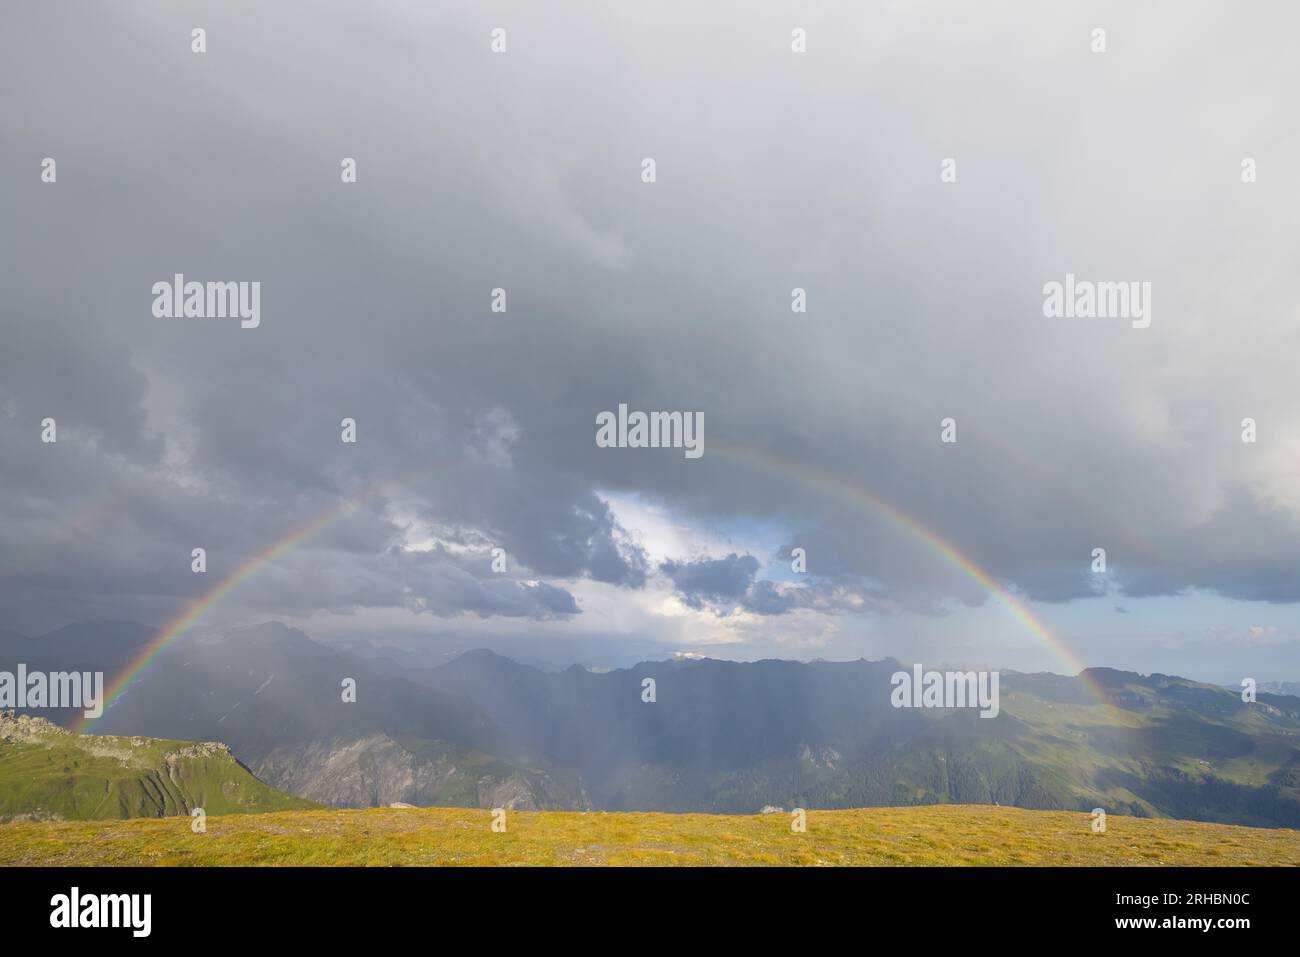 Was für ein wunderbarer Regenbogen am Horizont. Schöne Farben. Epische Sicht. Stockfoto